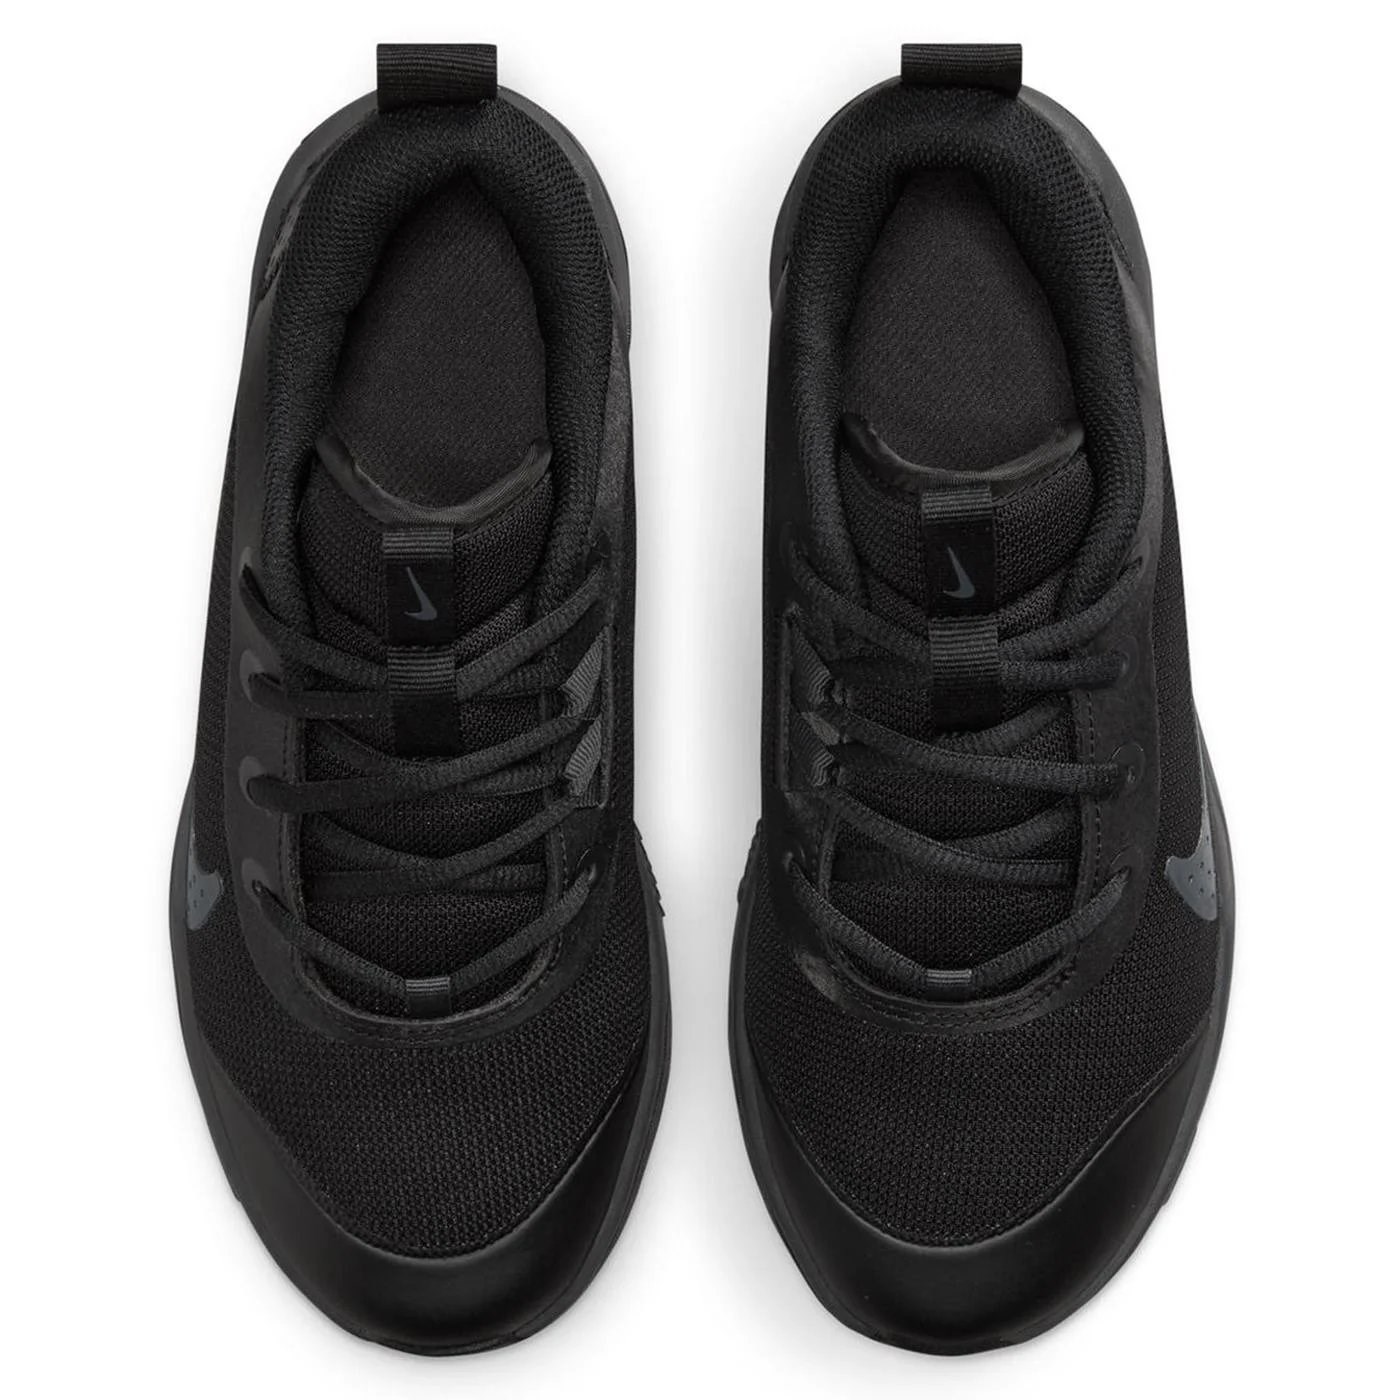 Nike Omni Multi-Court (Gs) Çocuk  Antrenman Ayakkabısı Siyah - Antrasit